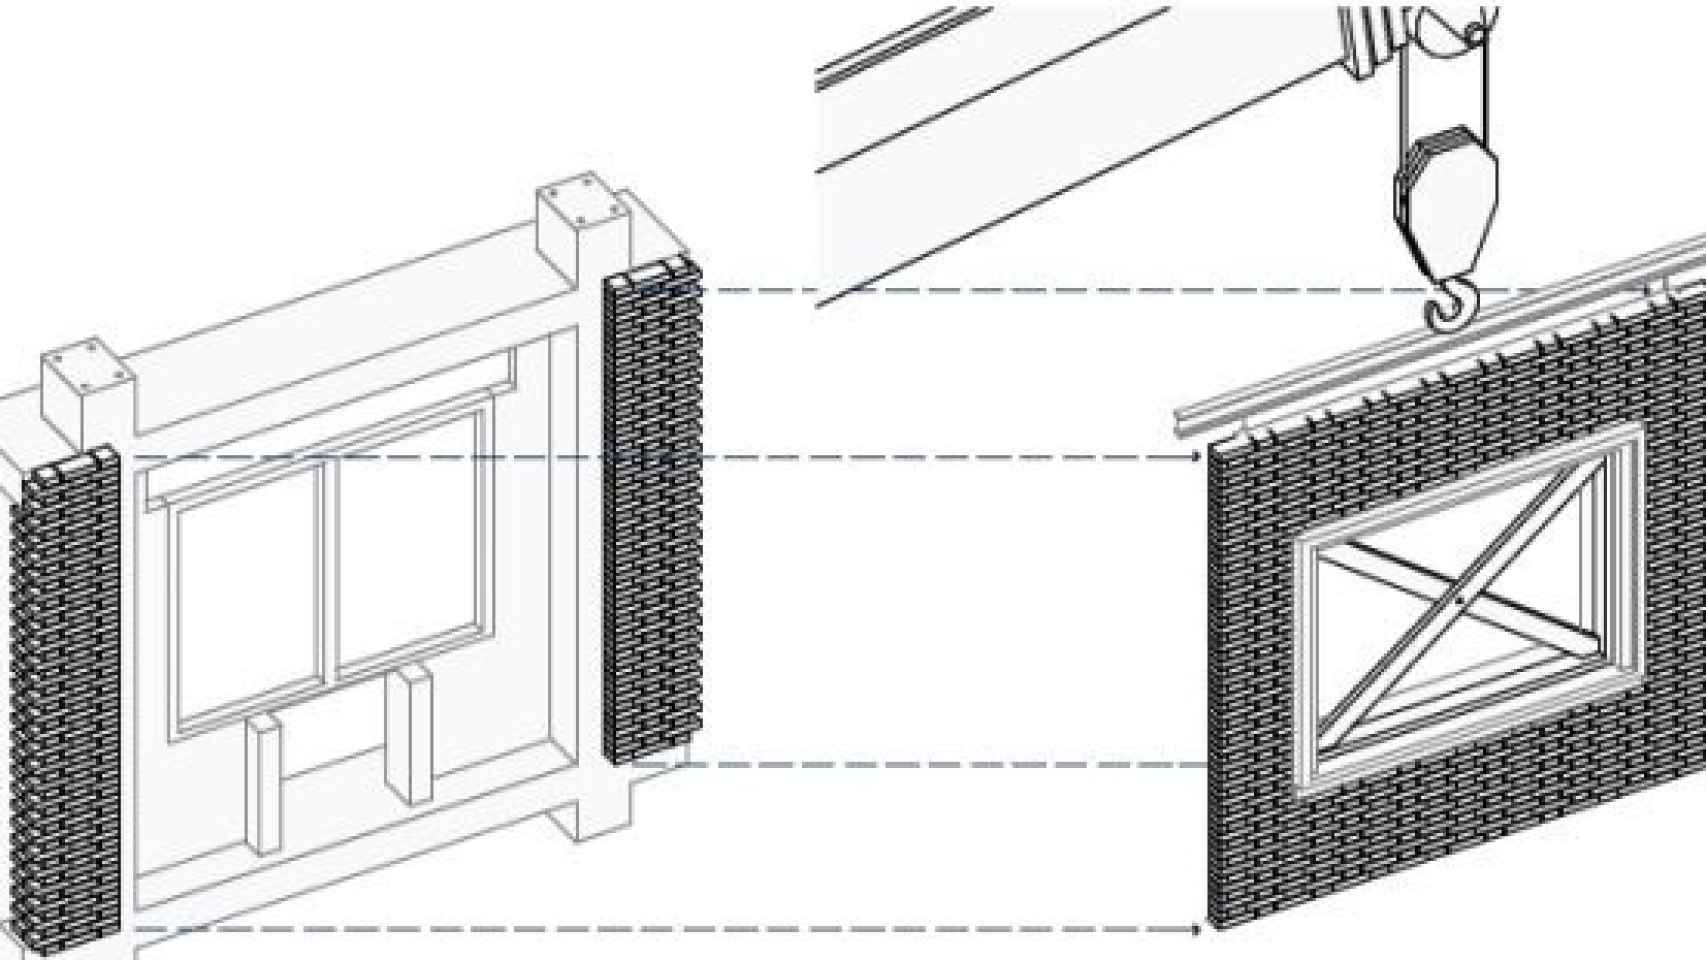 La patente de Adell extrae la fachada de ladrillo por módulos y la conserva.